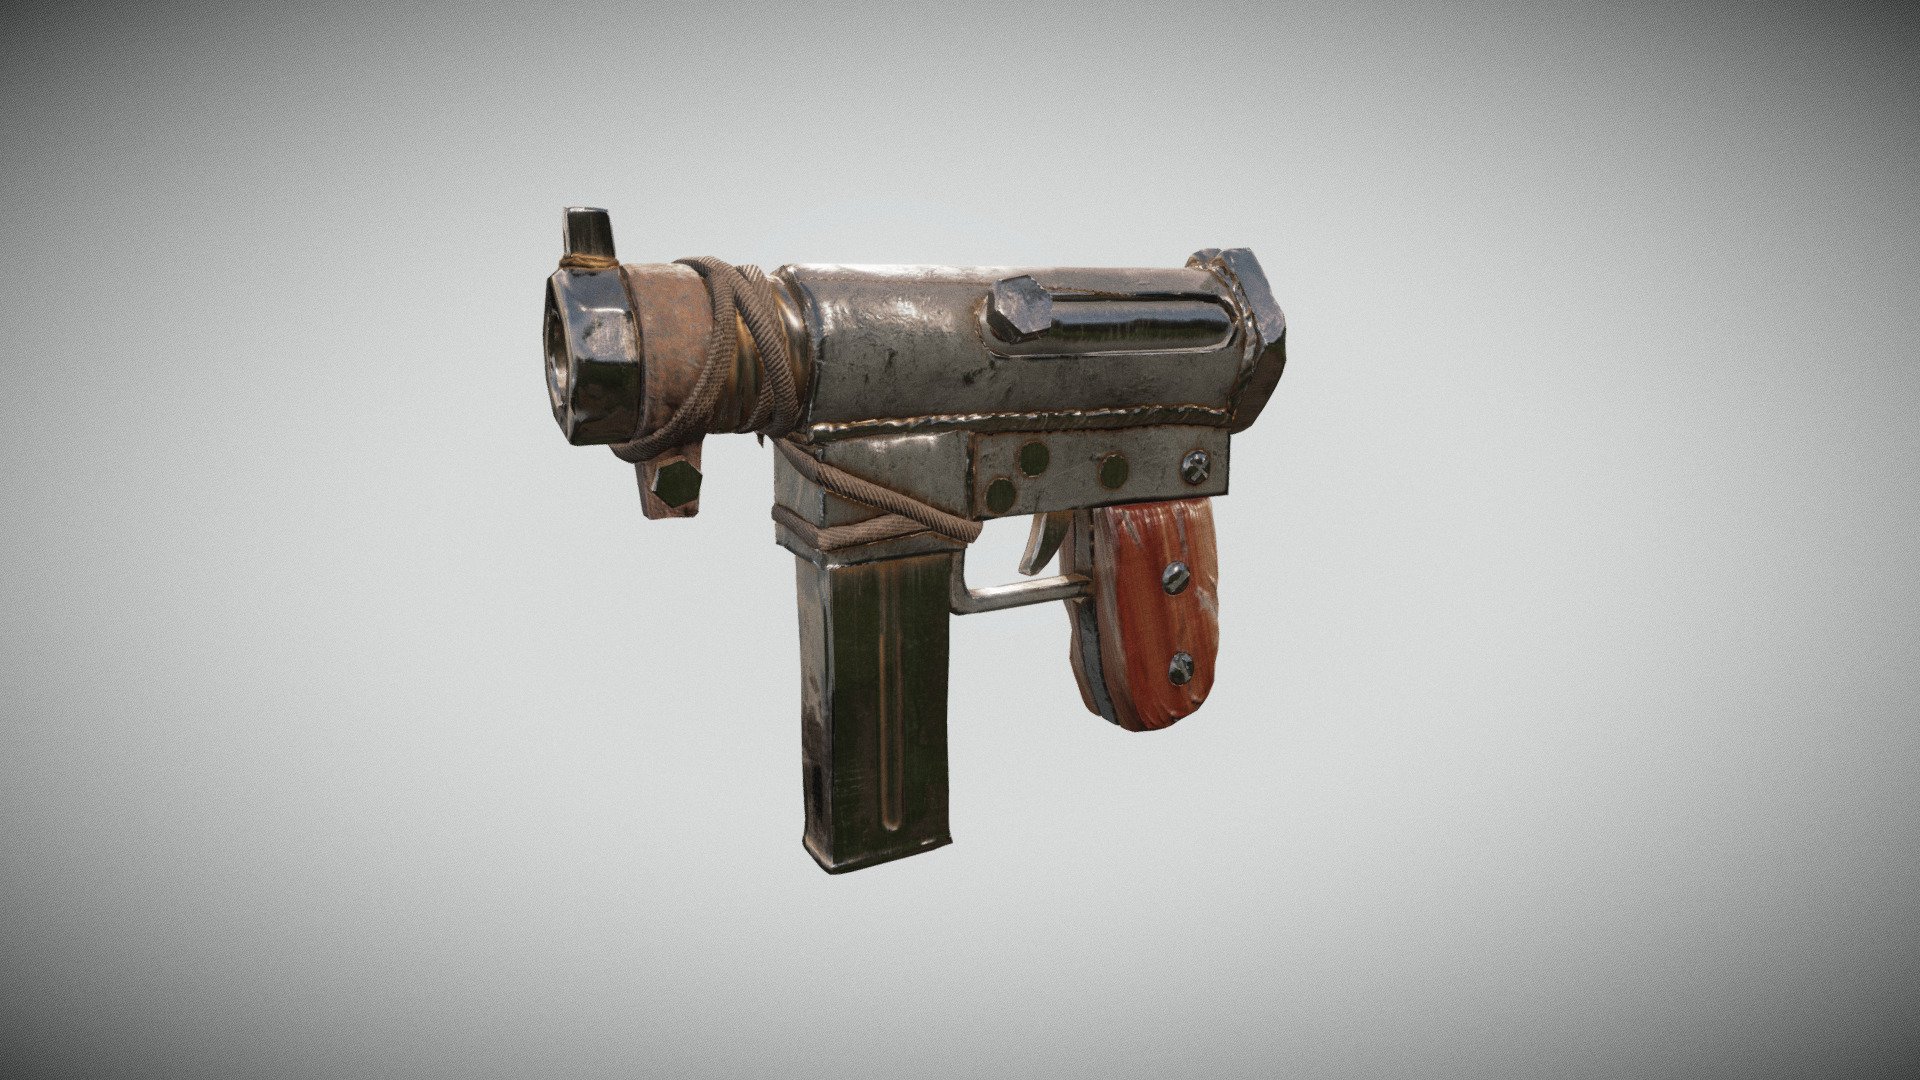 3D model of a stylized pistol - Stylized Weapon - 3D model by sgames1715 3d model